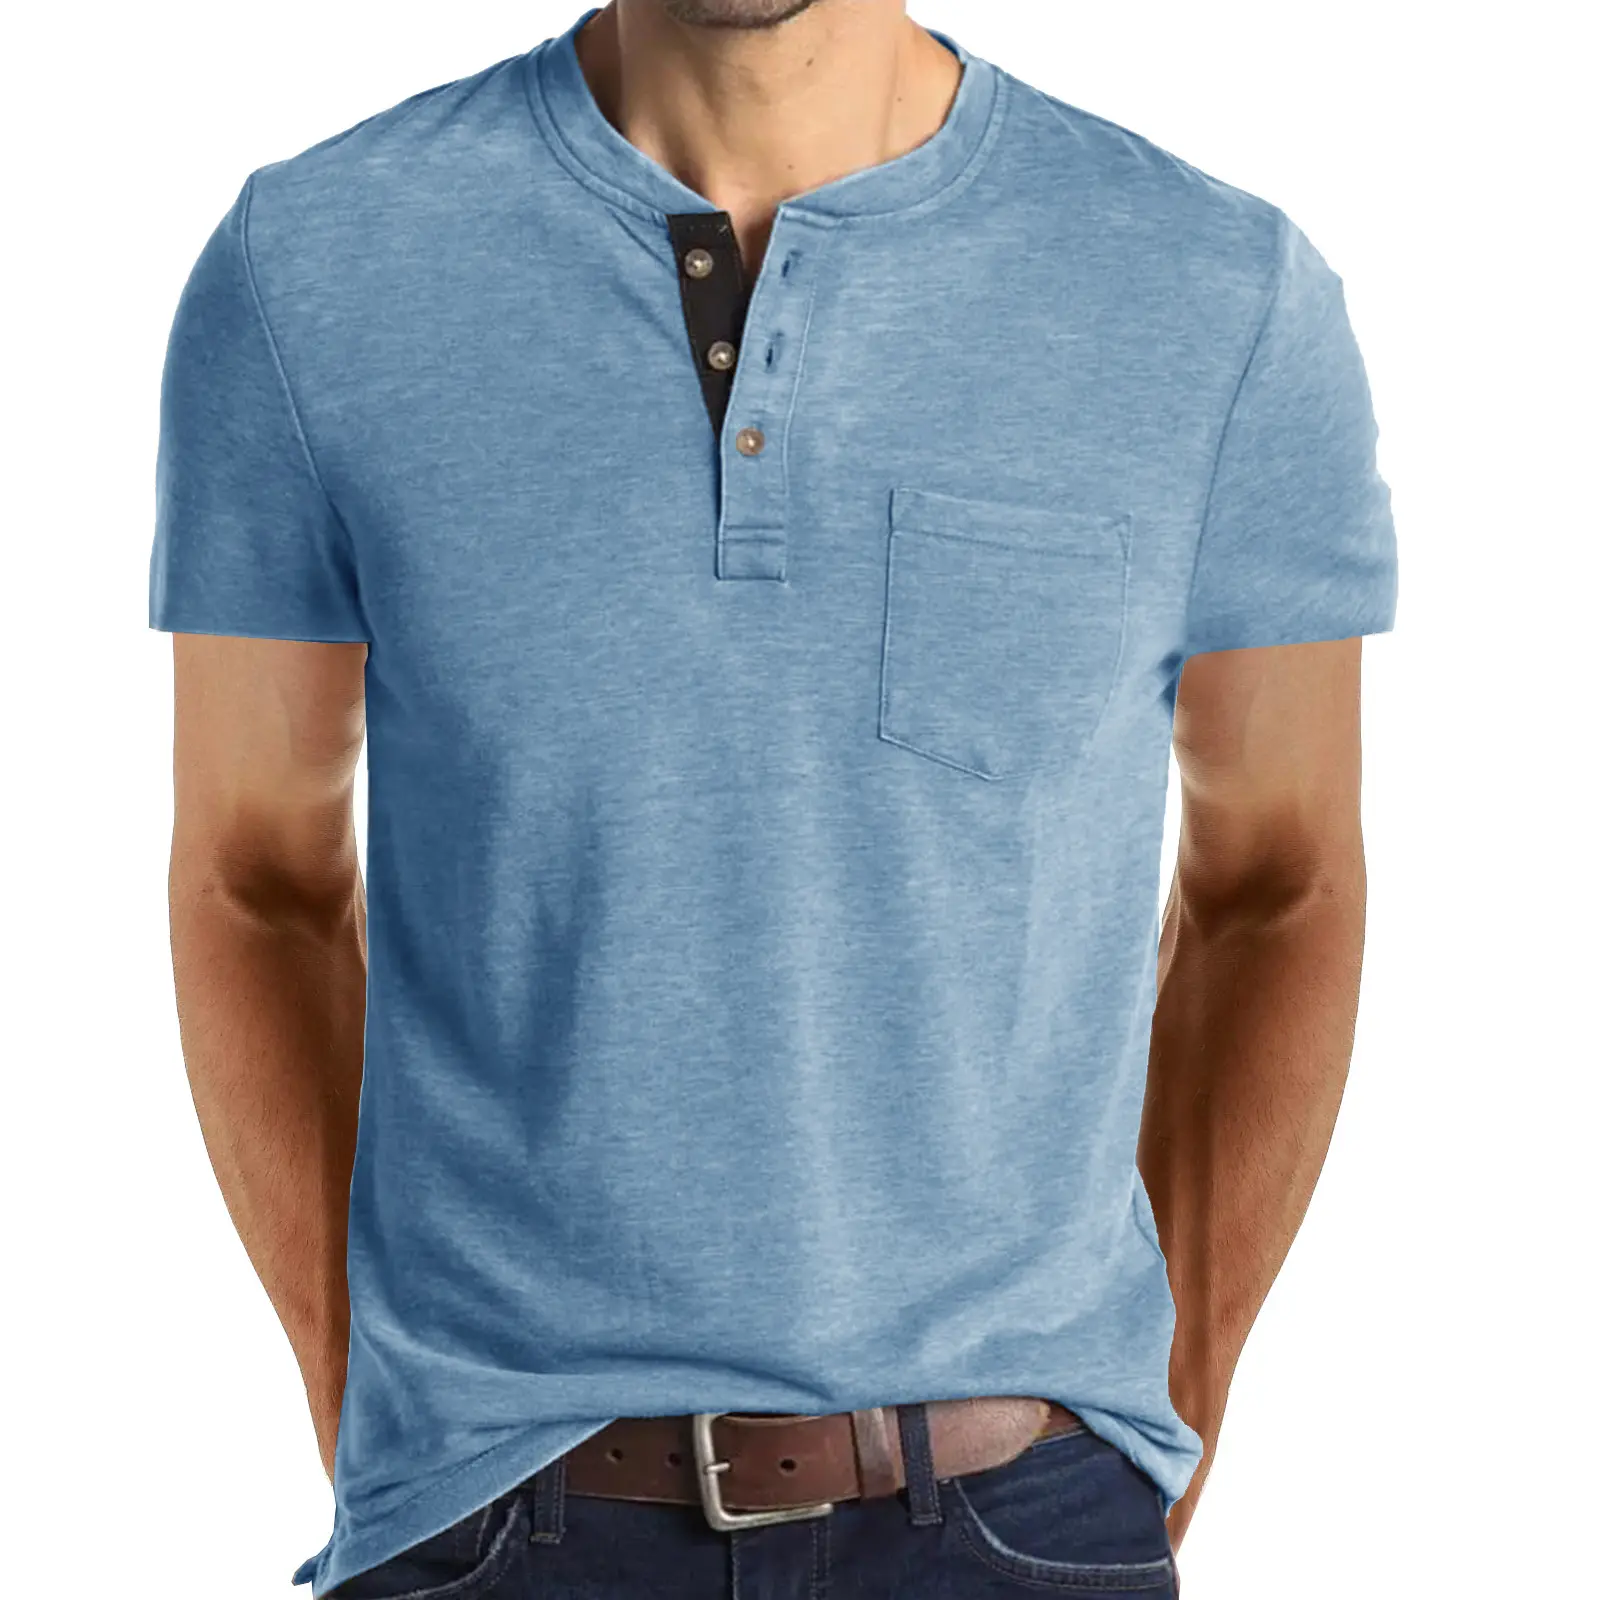 جودة عالية القطن غسل حمض خمر أزرق اللون هينلي قميص مطبوعة الرقمية جيوب الصدر كبير الحجم تي شيرت في حجم كبير